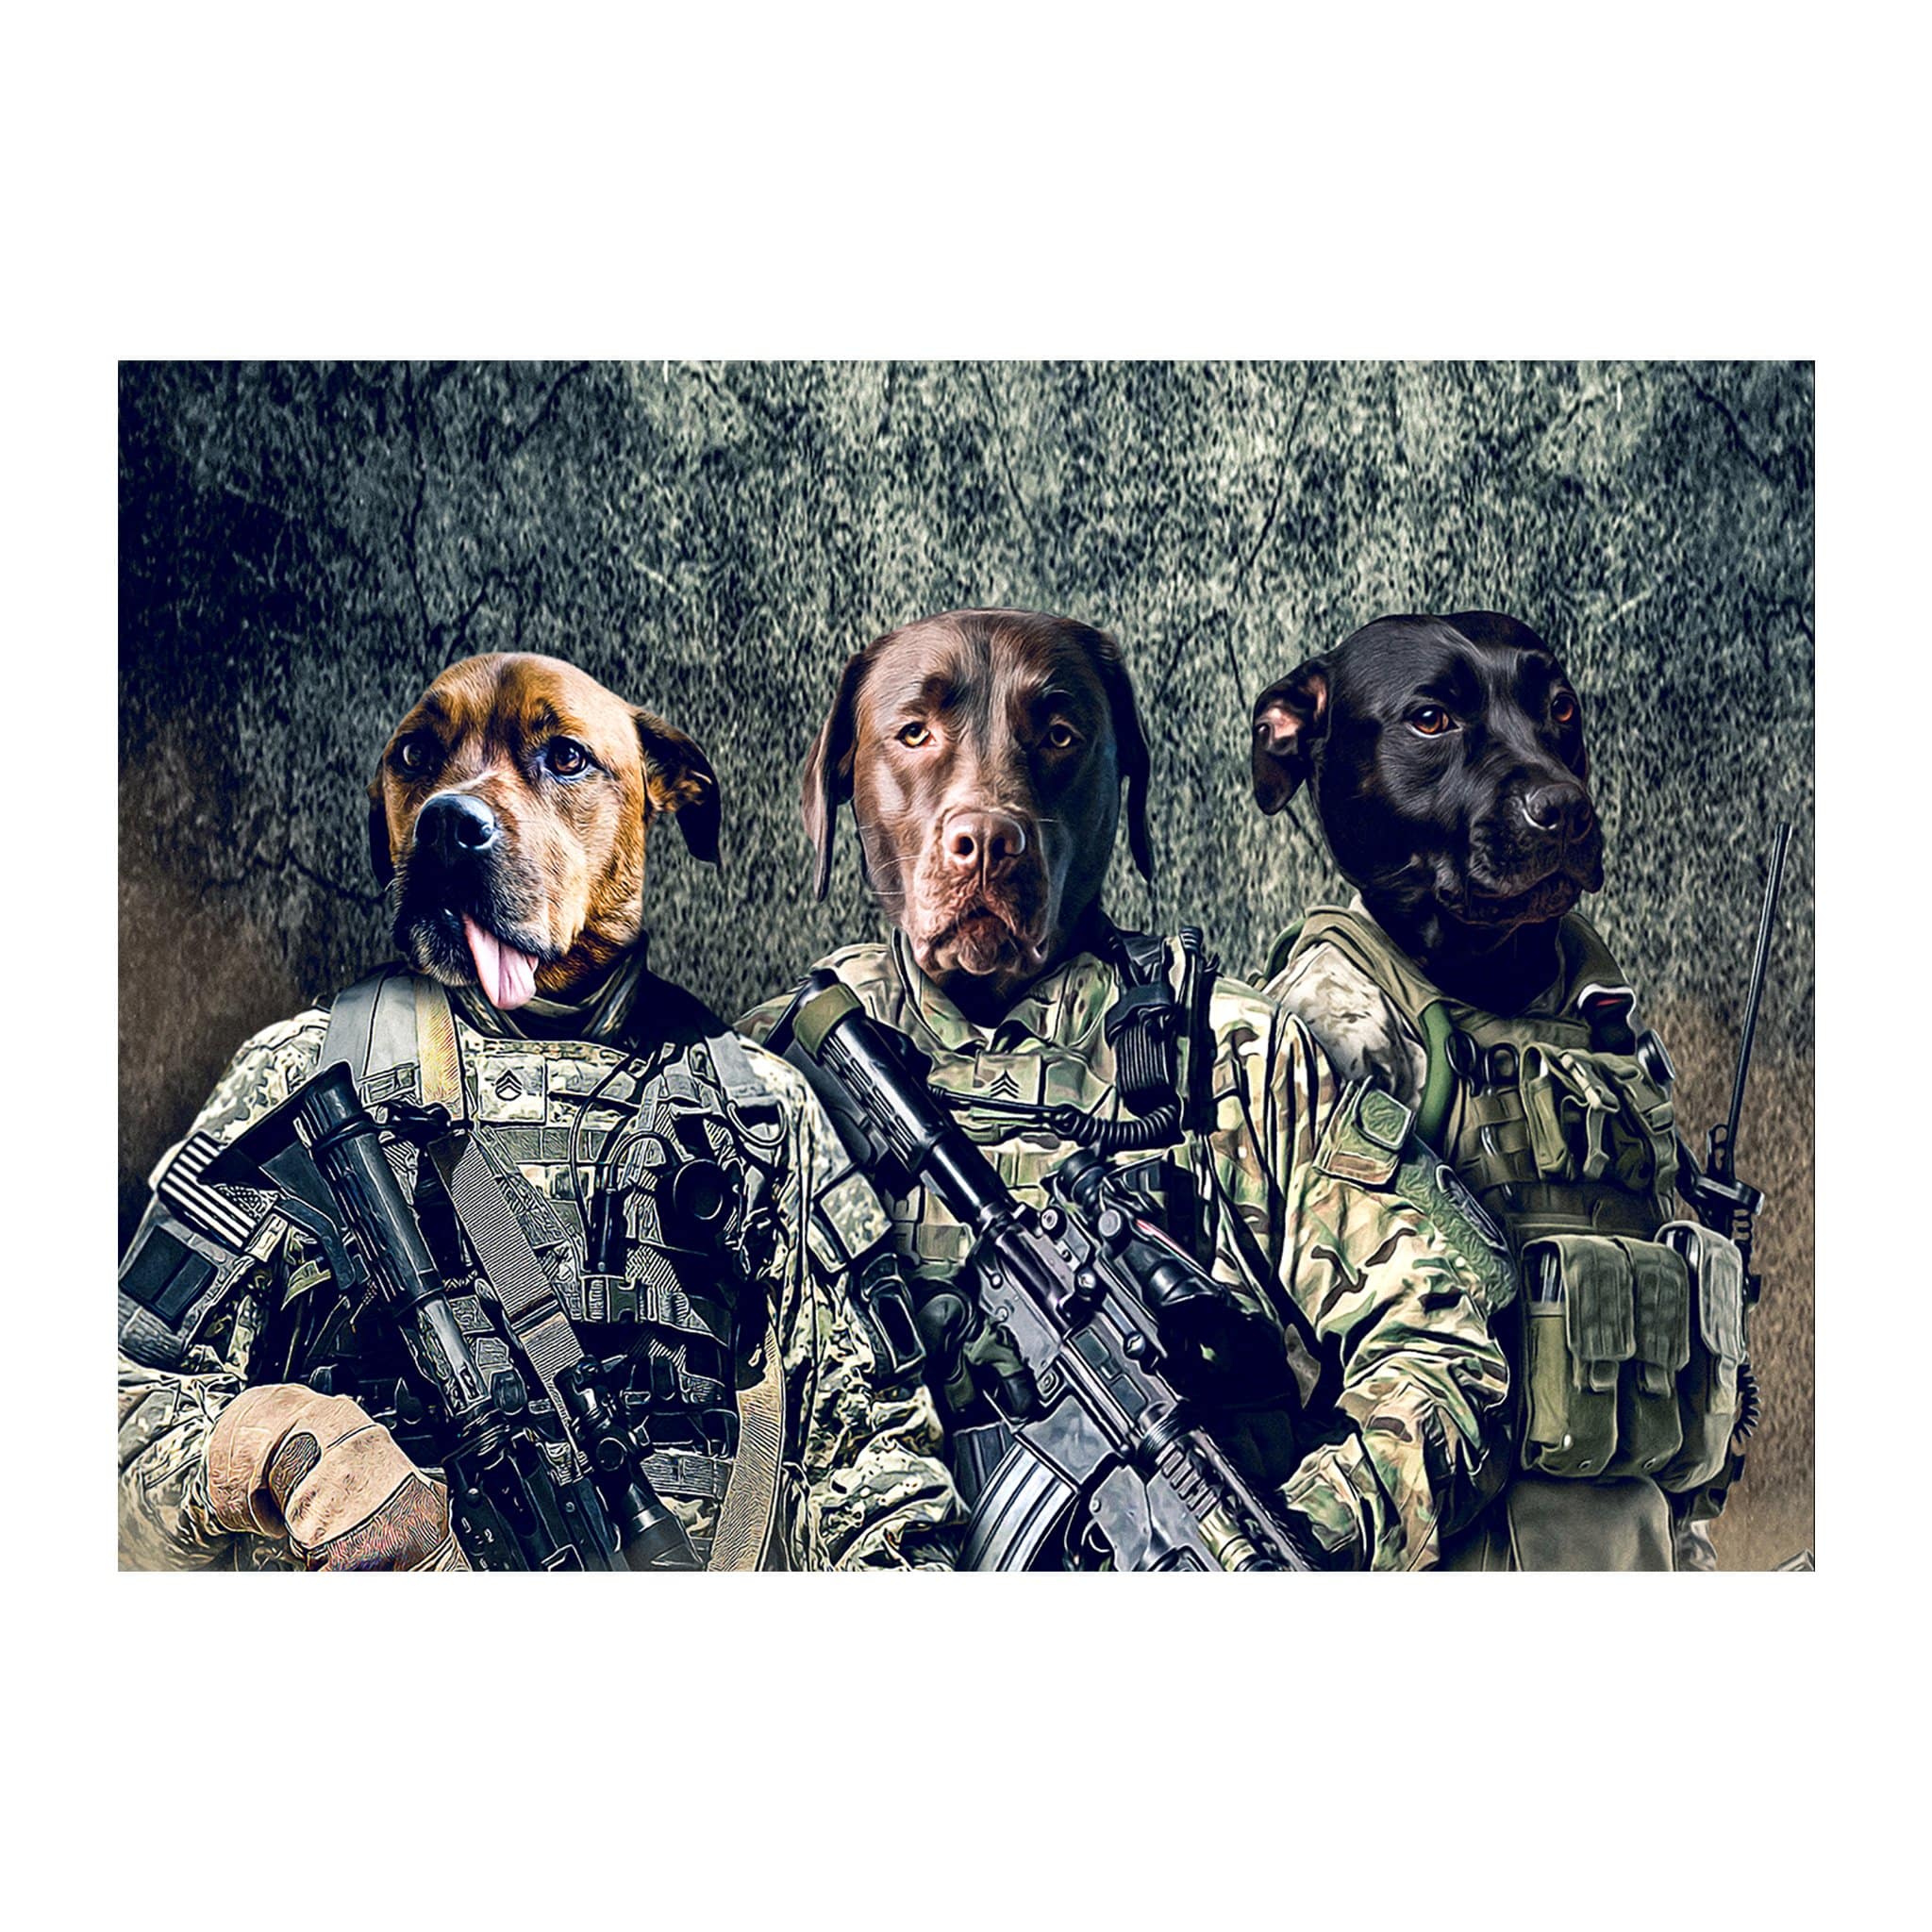 &#39;The Army Veterans&#39; 3 Pet Digital Portrait